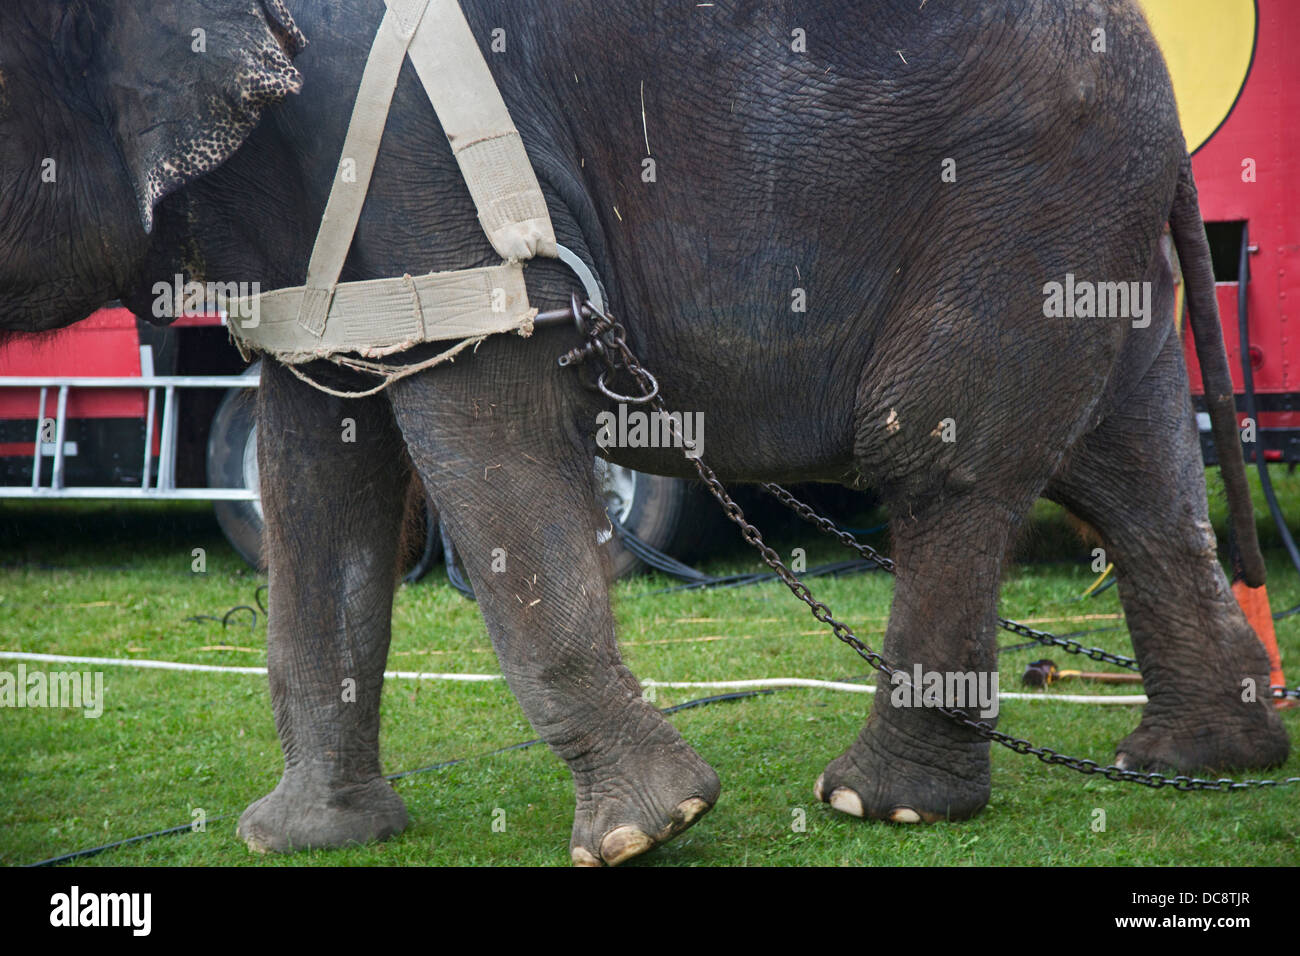 Redford, Michigan - hilft ein Elefant, ein Zelt für eine Aufführung des Kelly Miller Zirkus aufstellen. Stockfoto